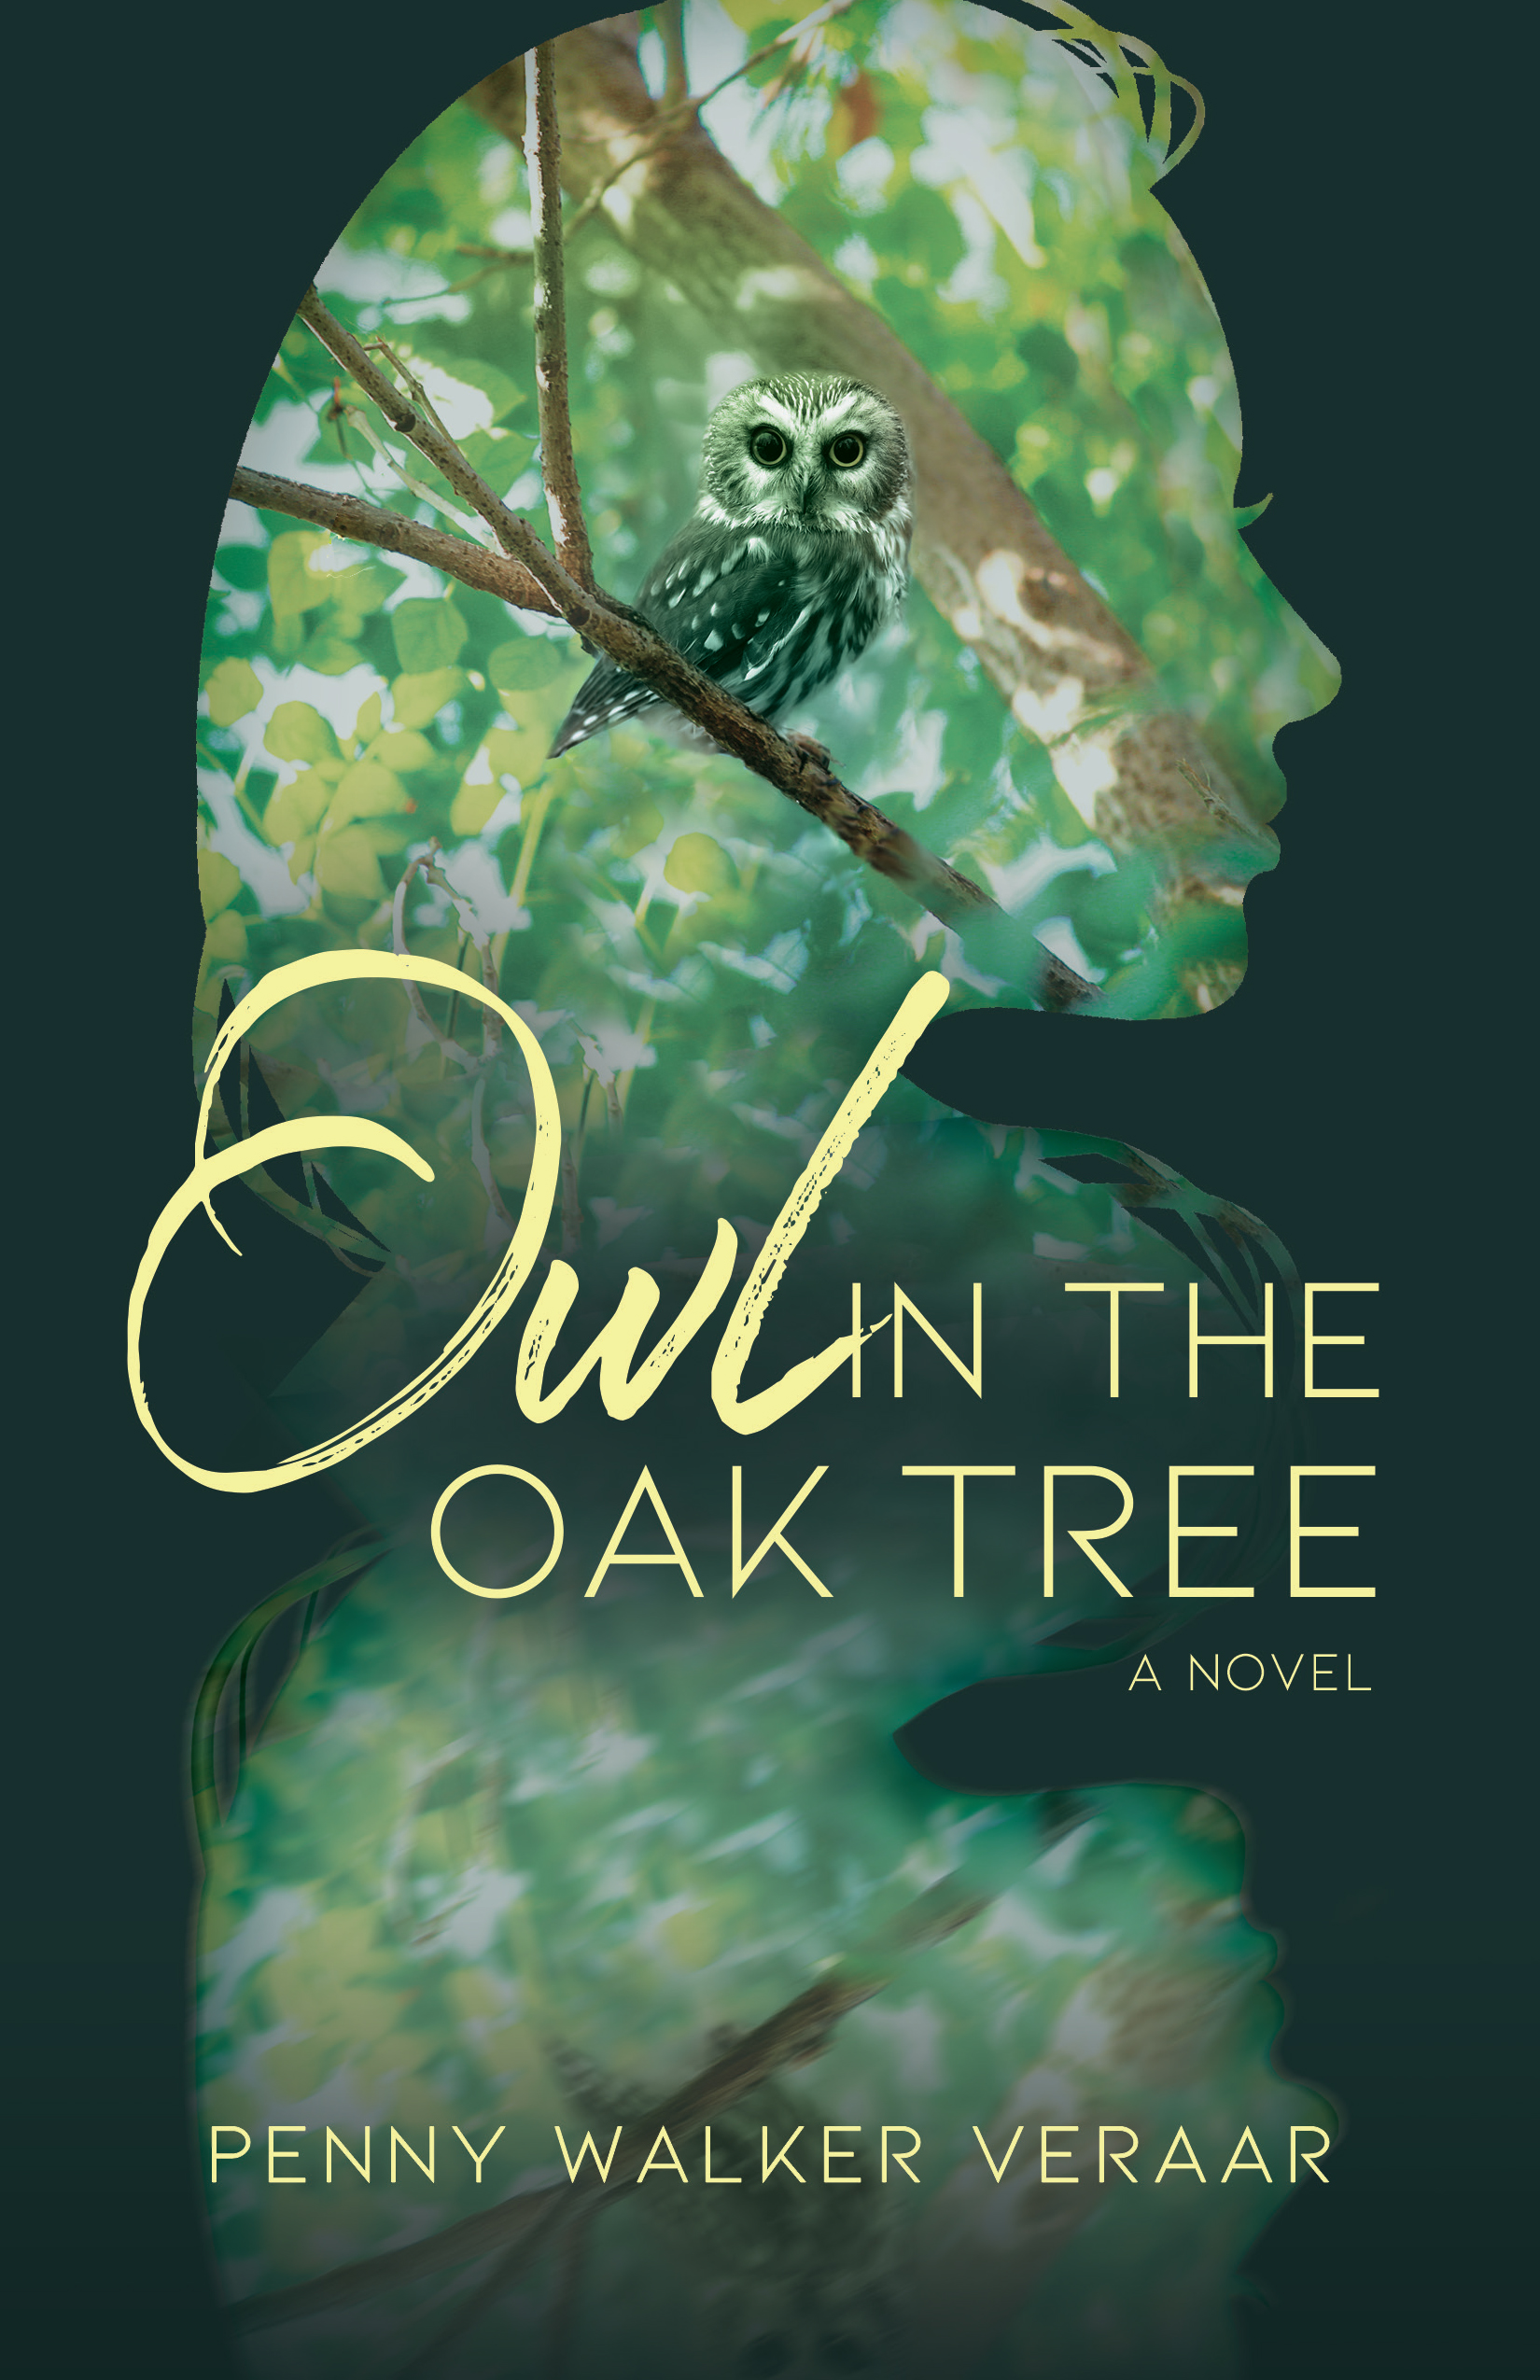 Owl in the Oak Tree by Penny Walker Veraar